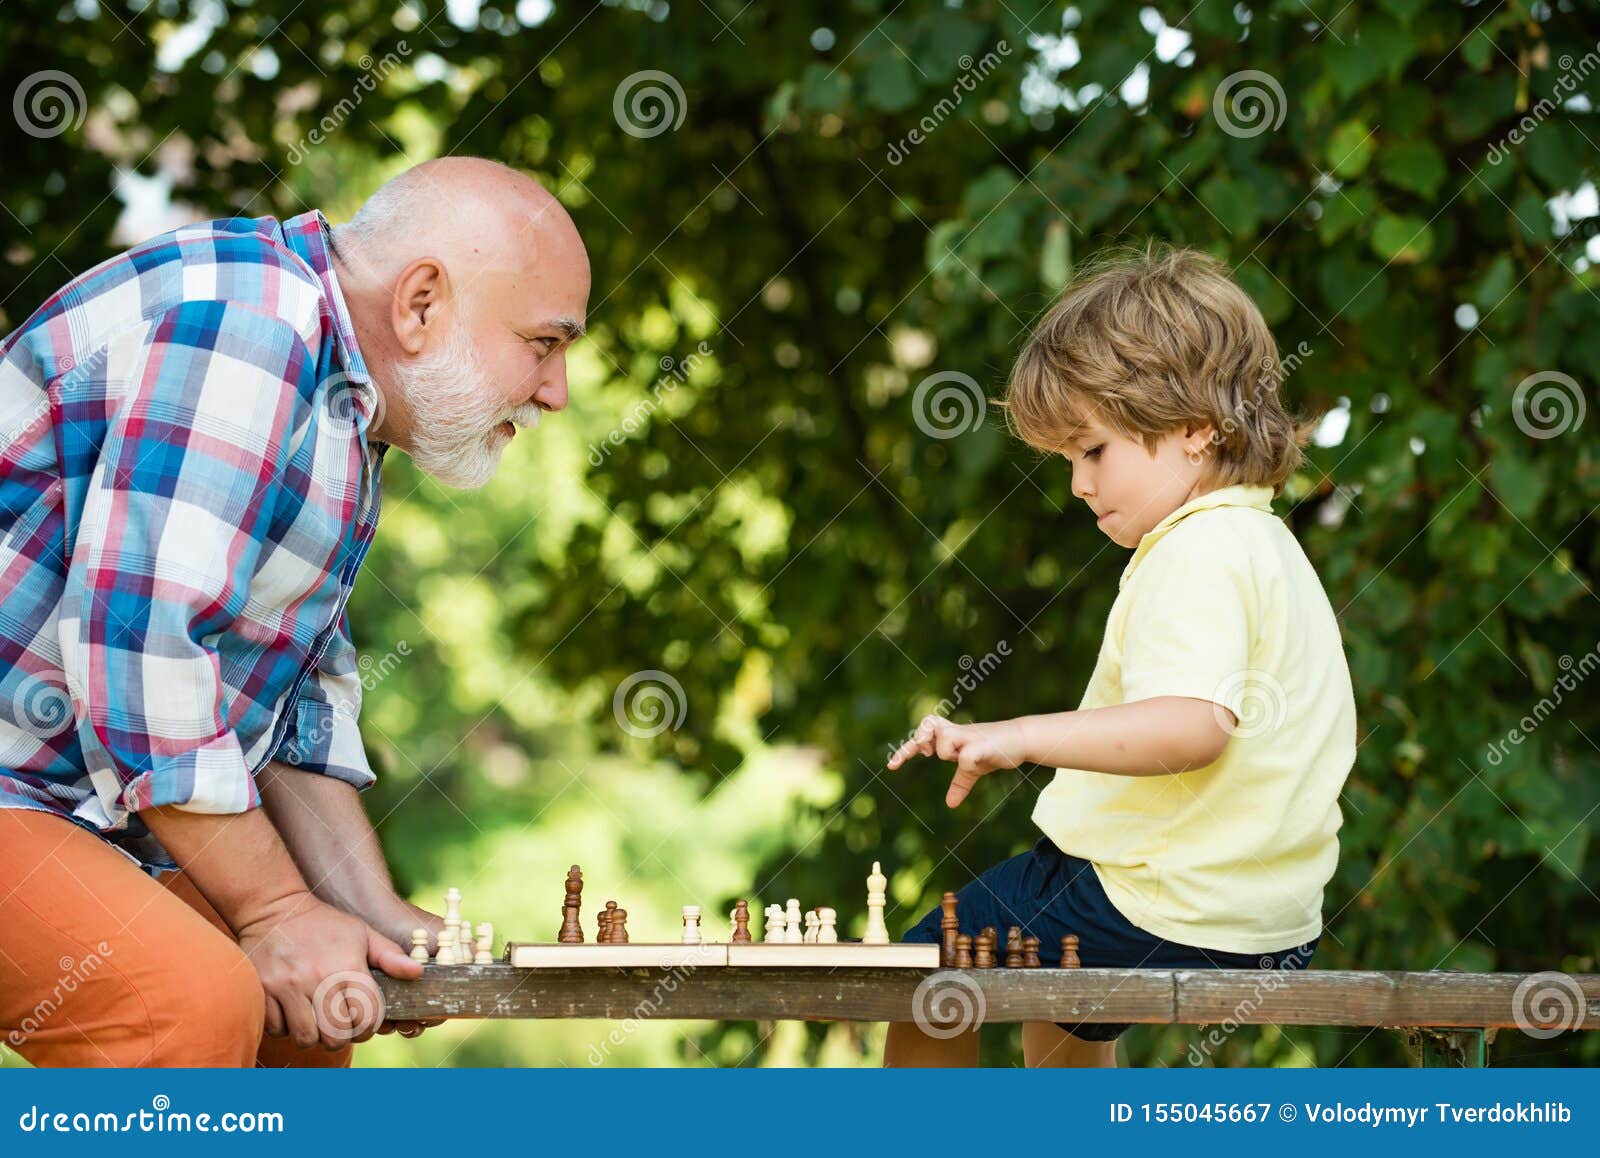 Дед с внуком играют в шашки. Дедушка и внук играют в шахматы. Дедушка с внучкоиграют в шахматы. Дедушка играет с внуком. Мальчик в воздухе.